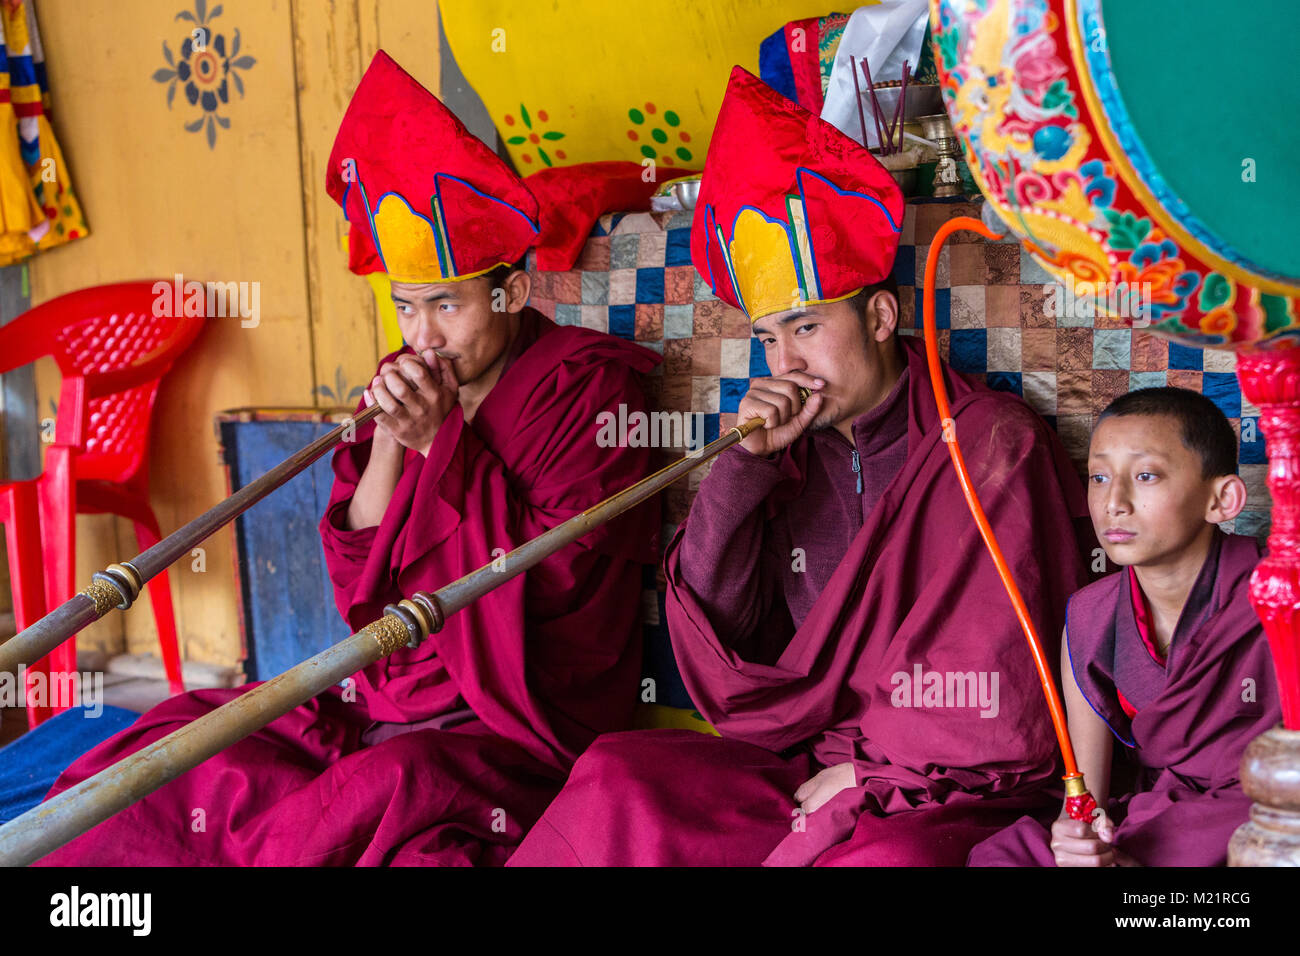 Prakhar Lhakhang, Bumthang, Bhoutan. Les moines bouddhistes jouant le long Dungchen (trompette), jeune moine jouant du tambour. Banque D'Images